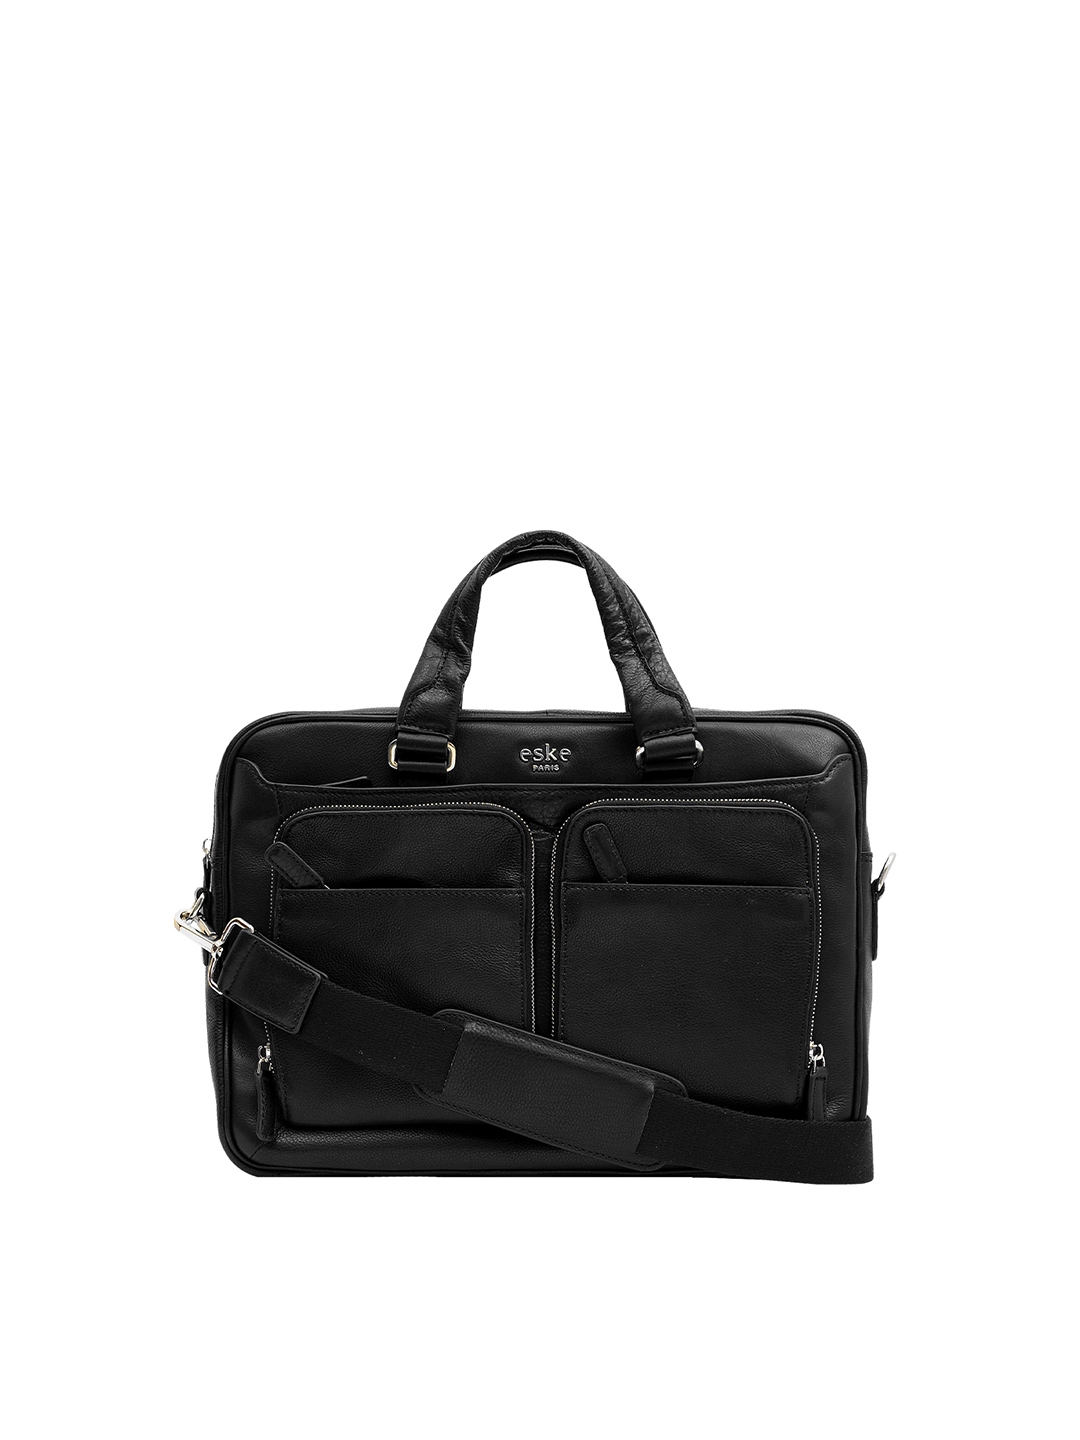 Buy Eske Men Black 15 Inch Leather Laptop Bag - Laptop Bag for Men ...